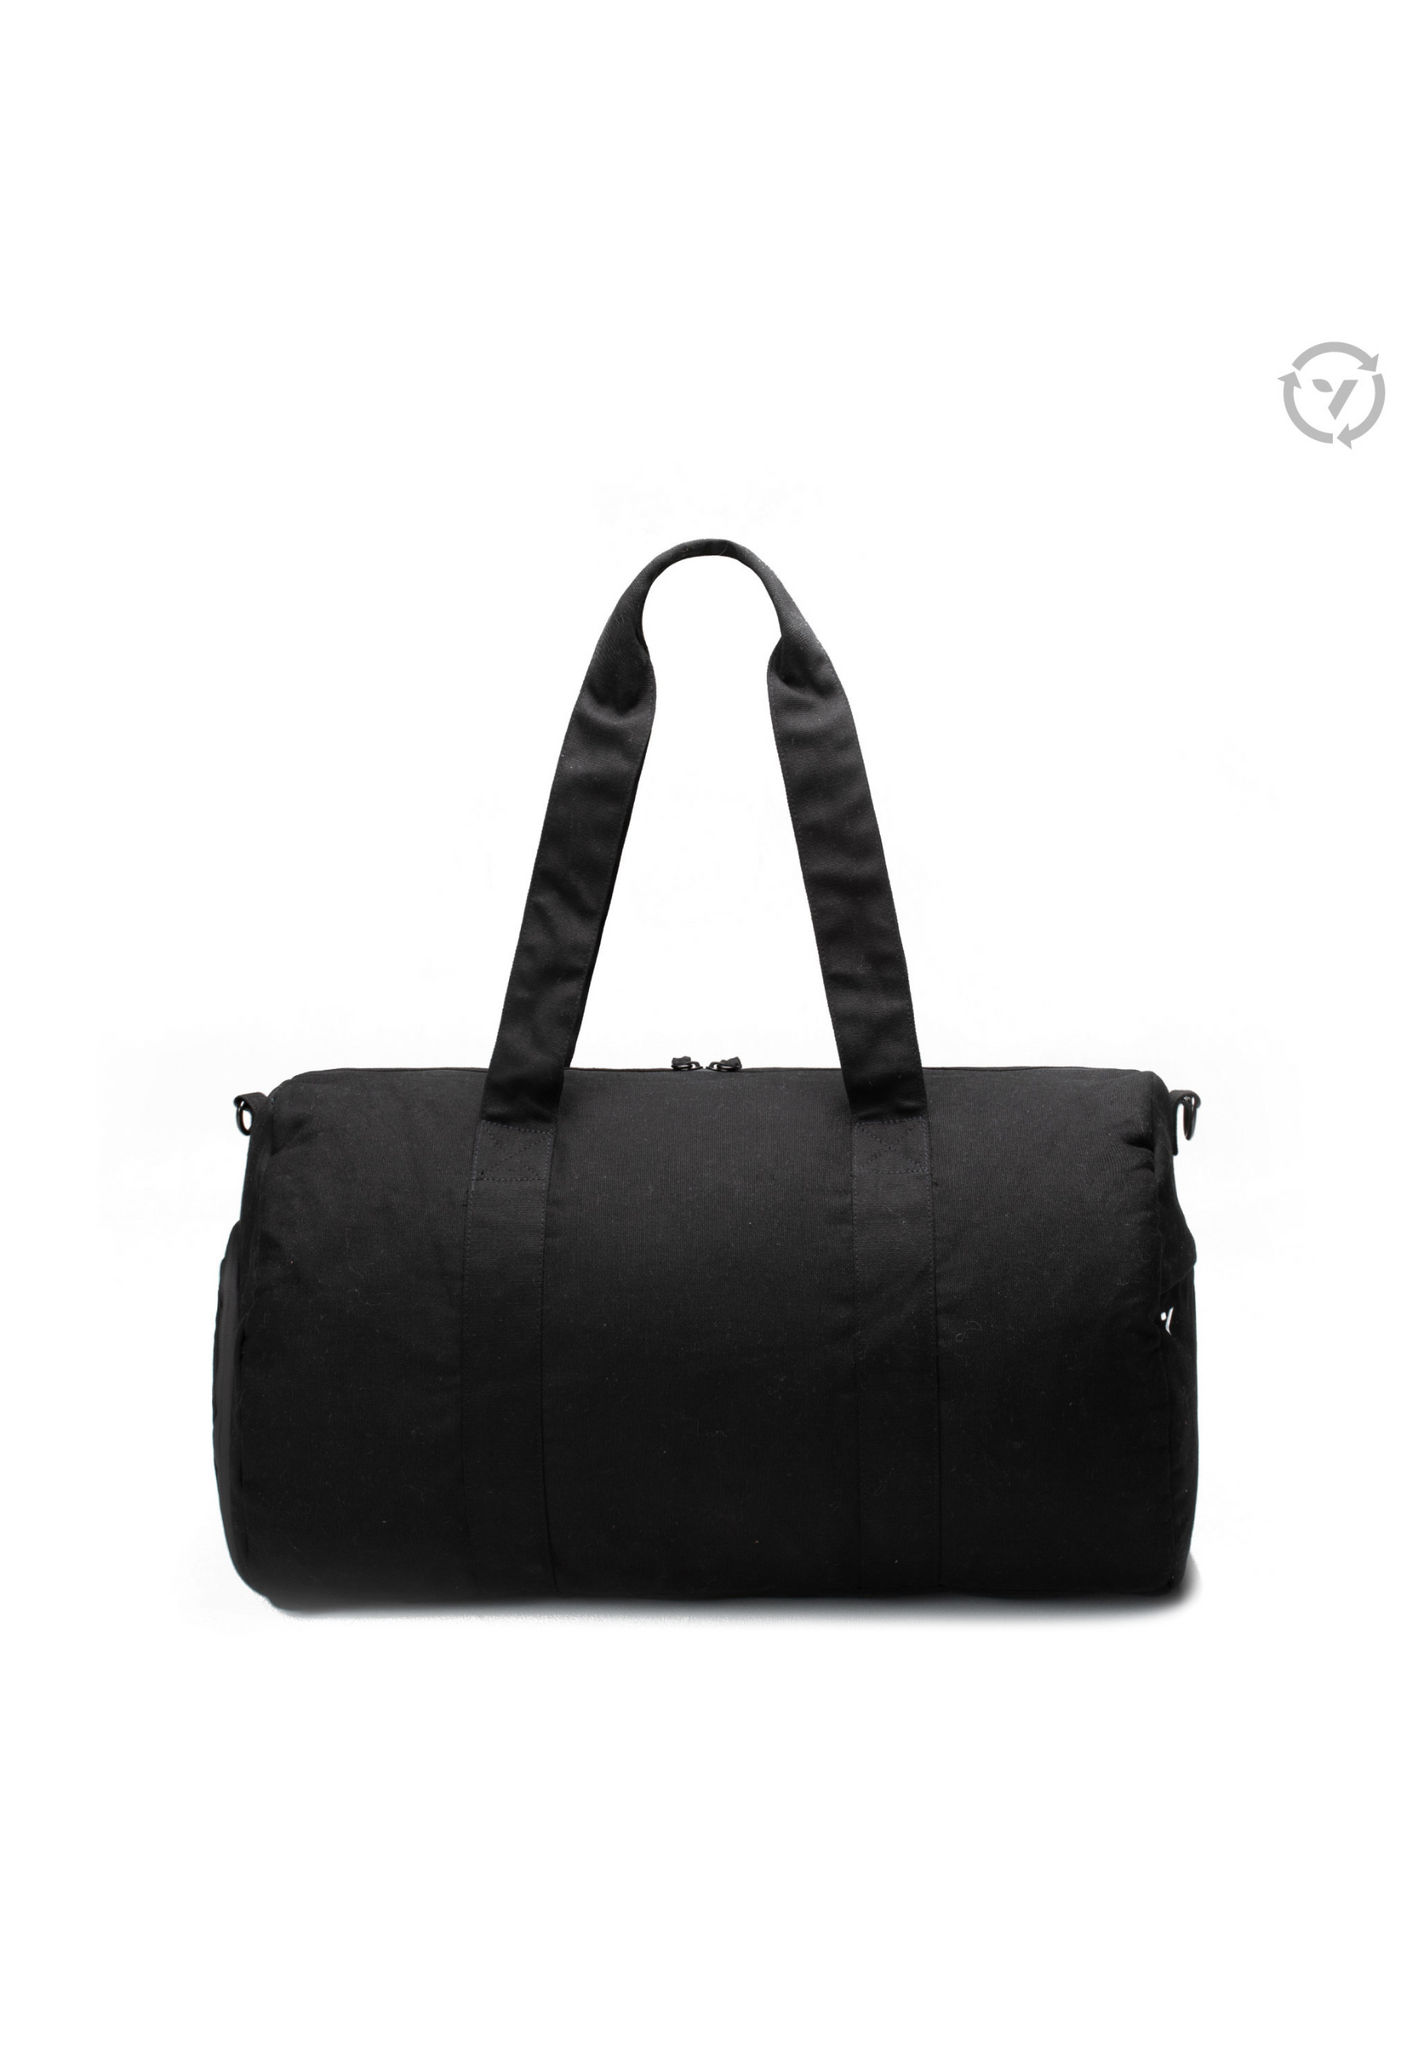 Vooray Savanna Organic Duffel Obsidian - la bolsa de viaje, la bolsa deporte y la travel bag esenciales